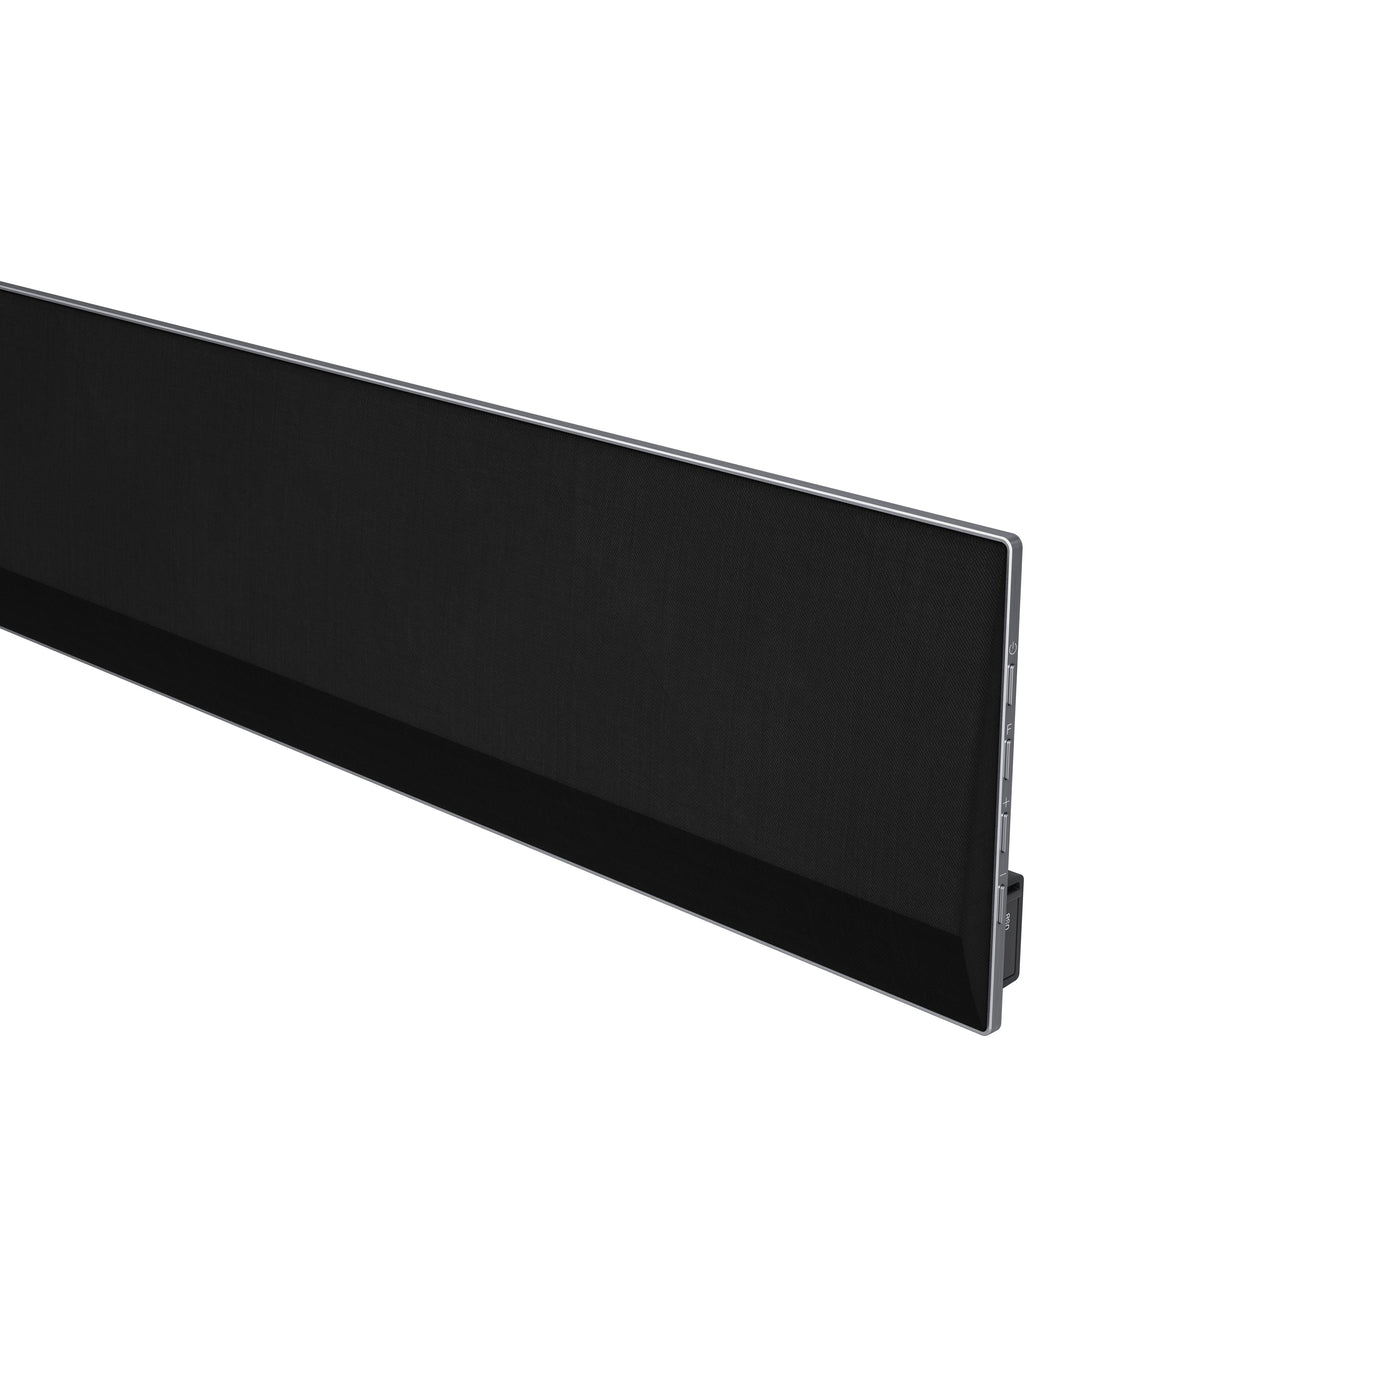 LG 420W 3.1 Channel Sound Bar with Dolby Atmos - GX